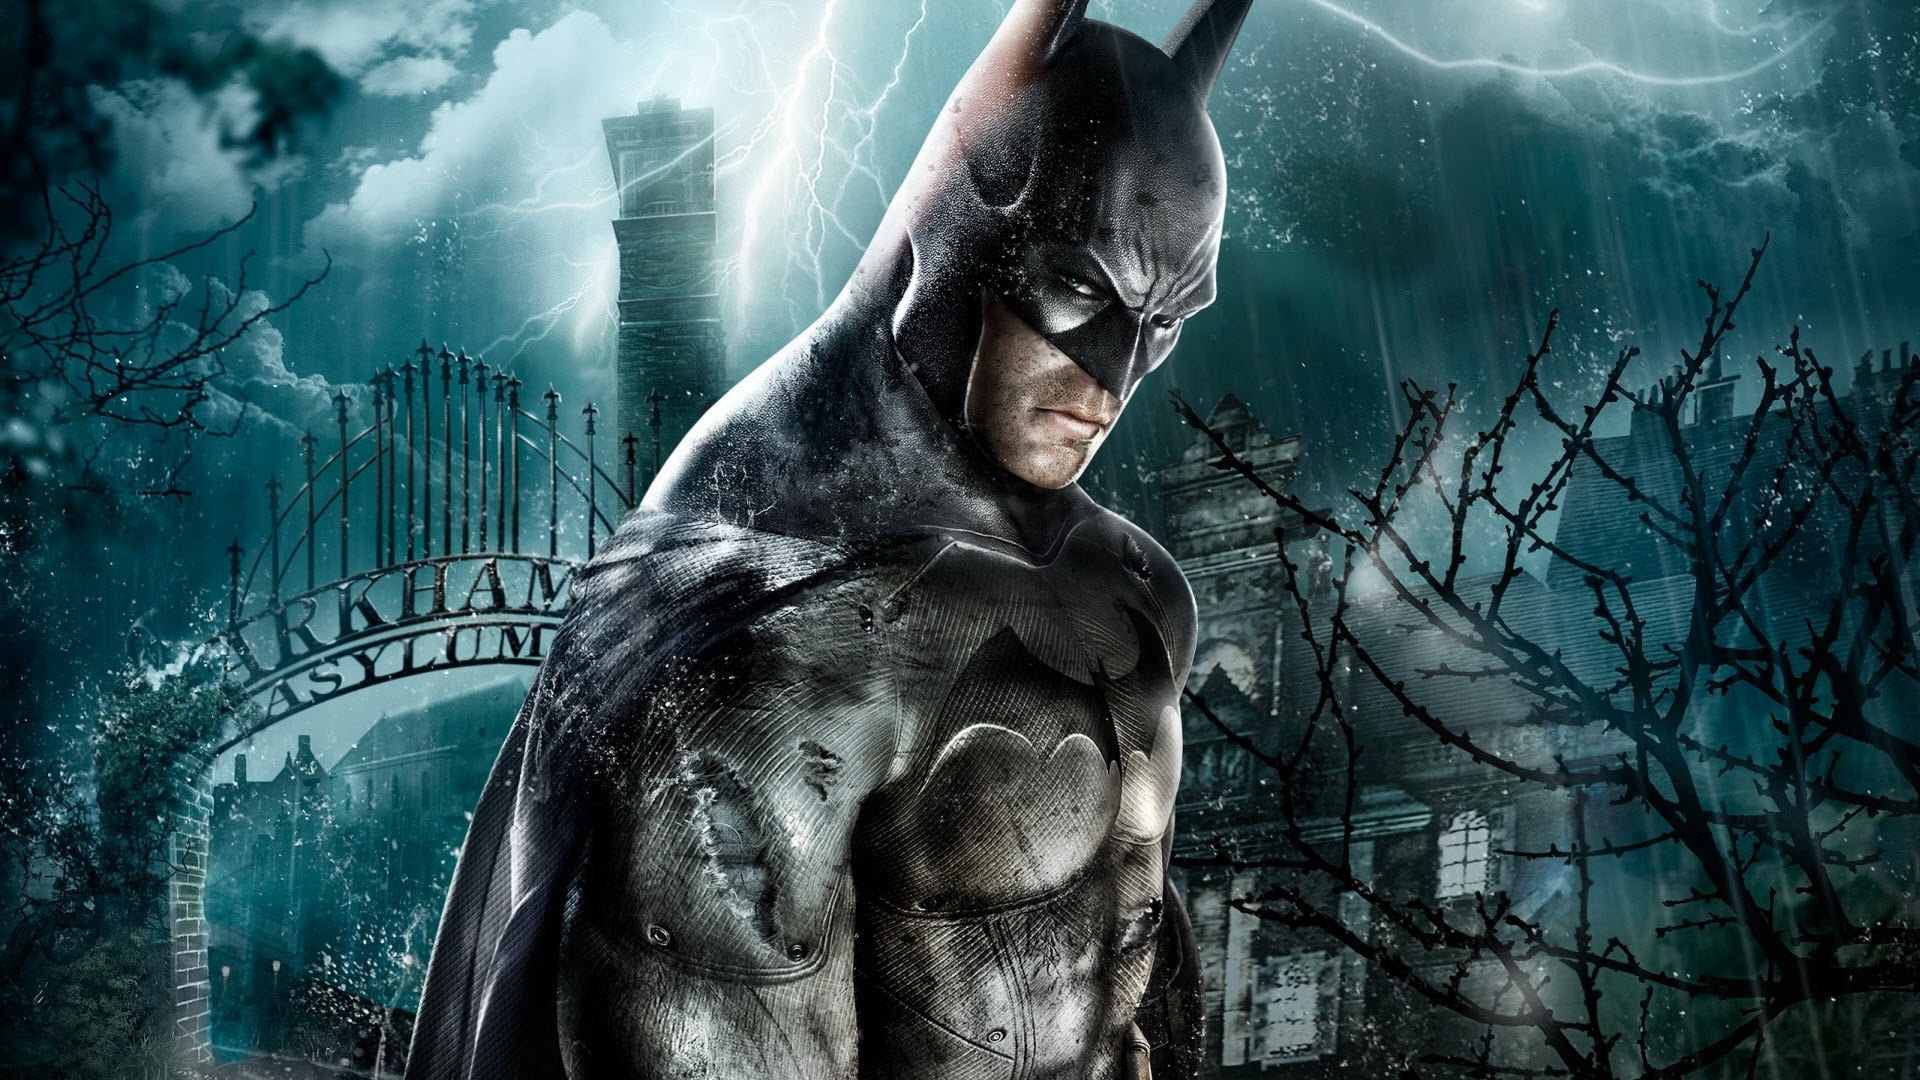 Batman: Arkham Asylum